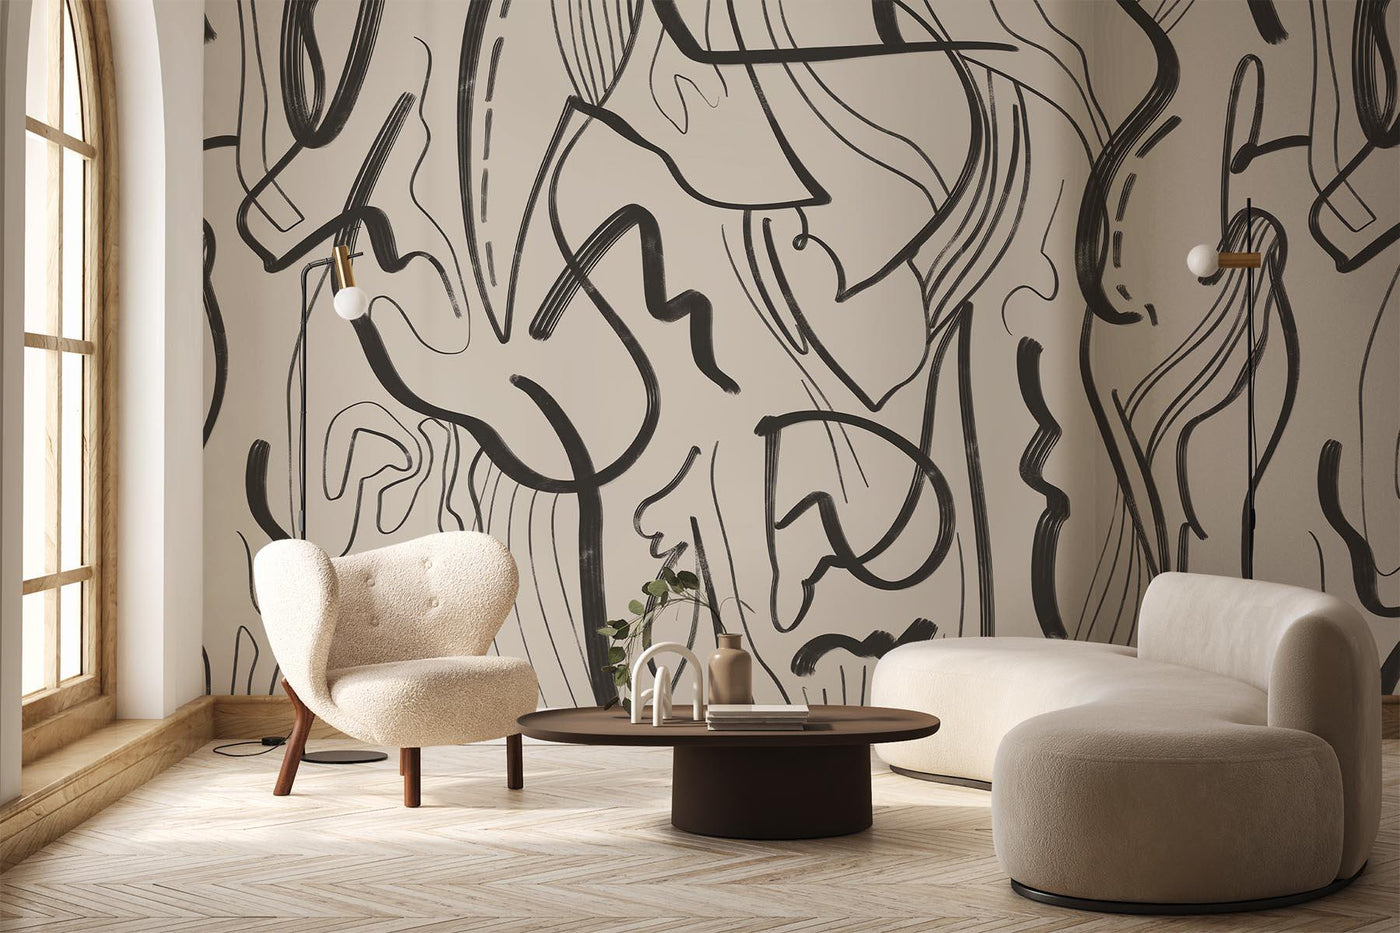 Contemporary Wallpaper | Custom wallpaper designs to transform homes |  England